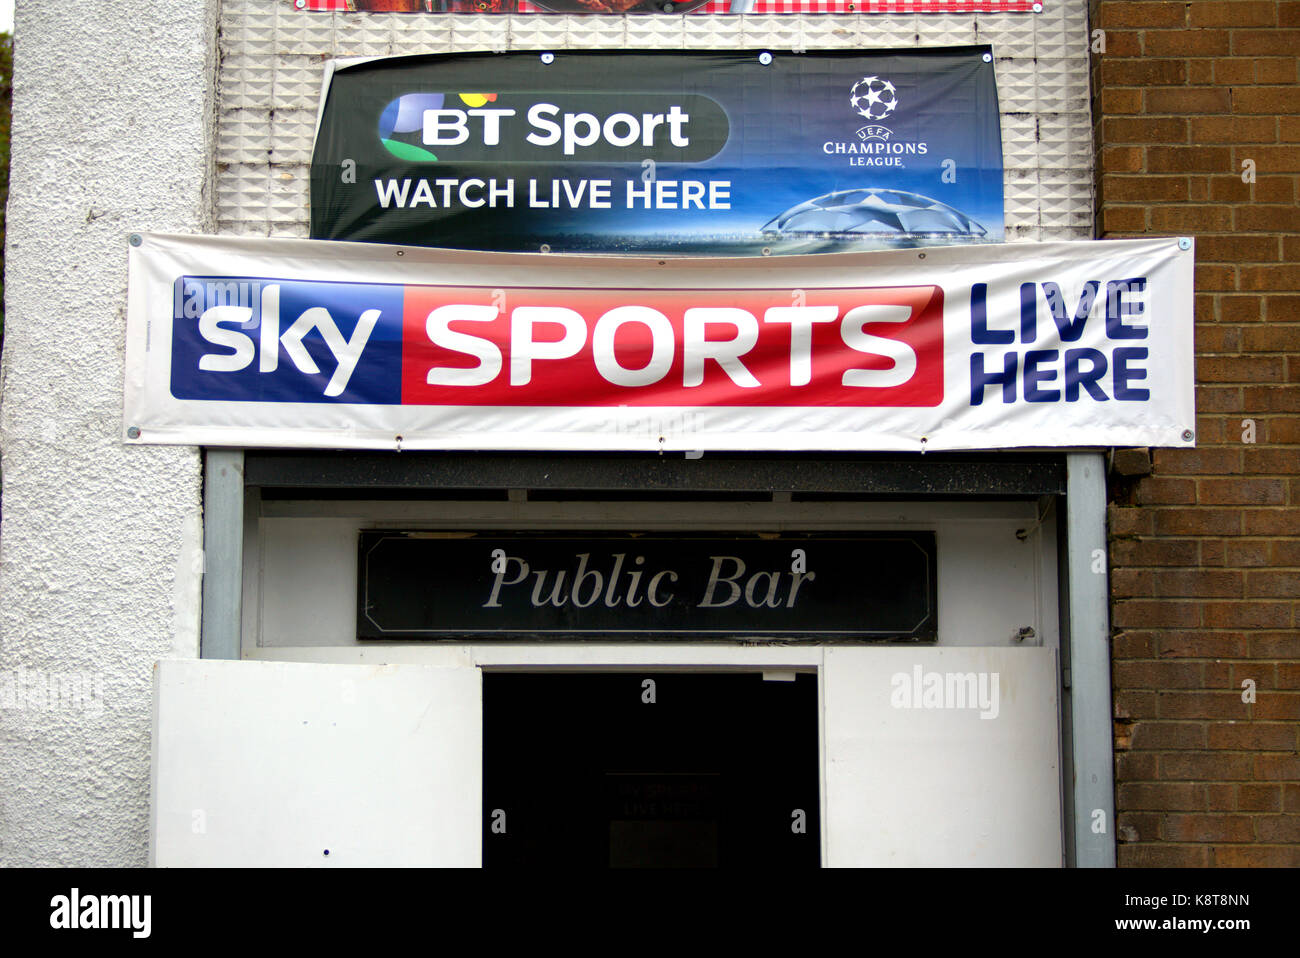 Sky sports bt sport pub fútbol amor anuncios ver en vivo aquí banners Foto de stock